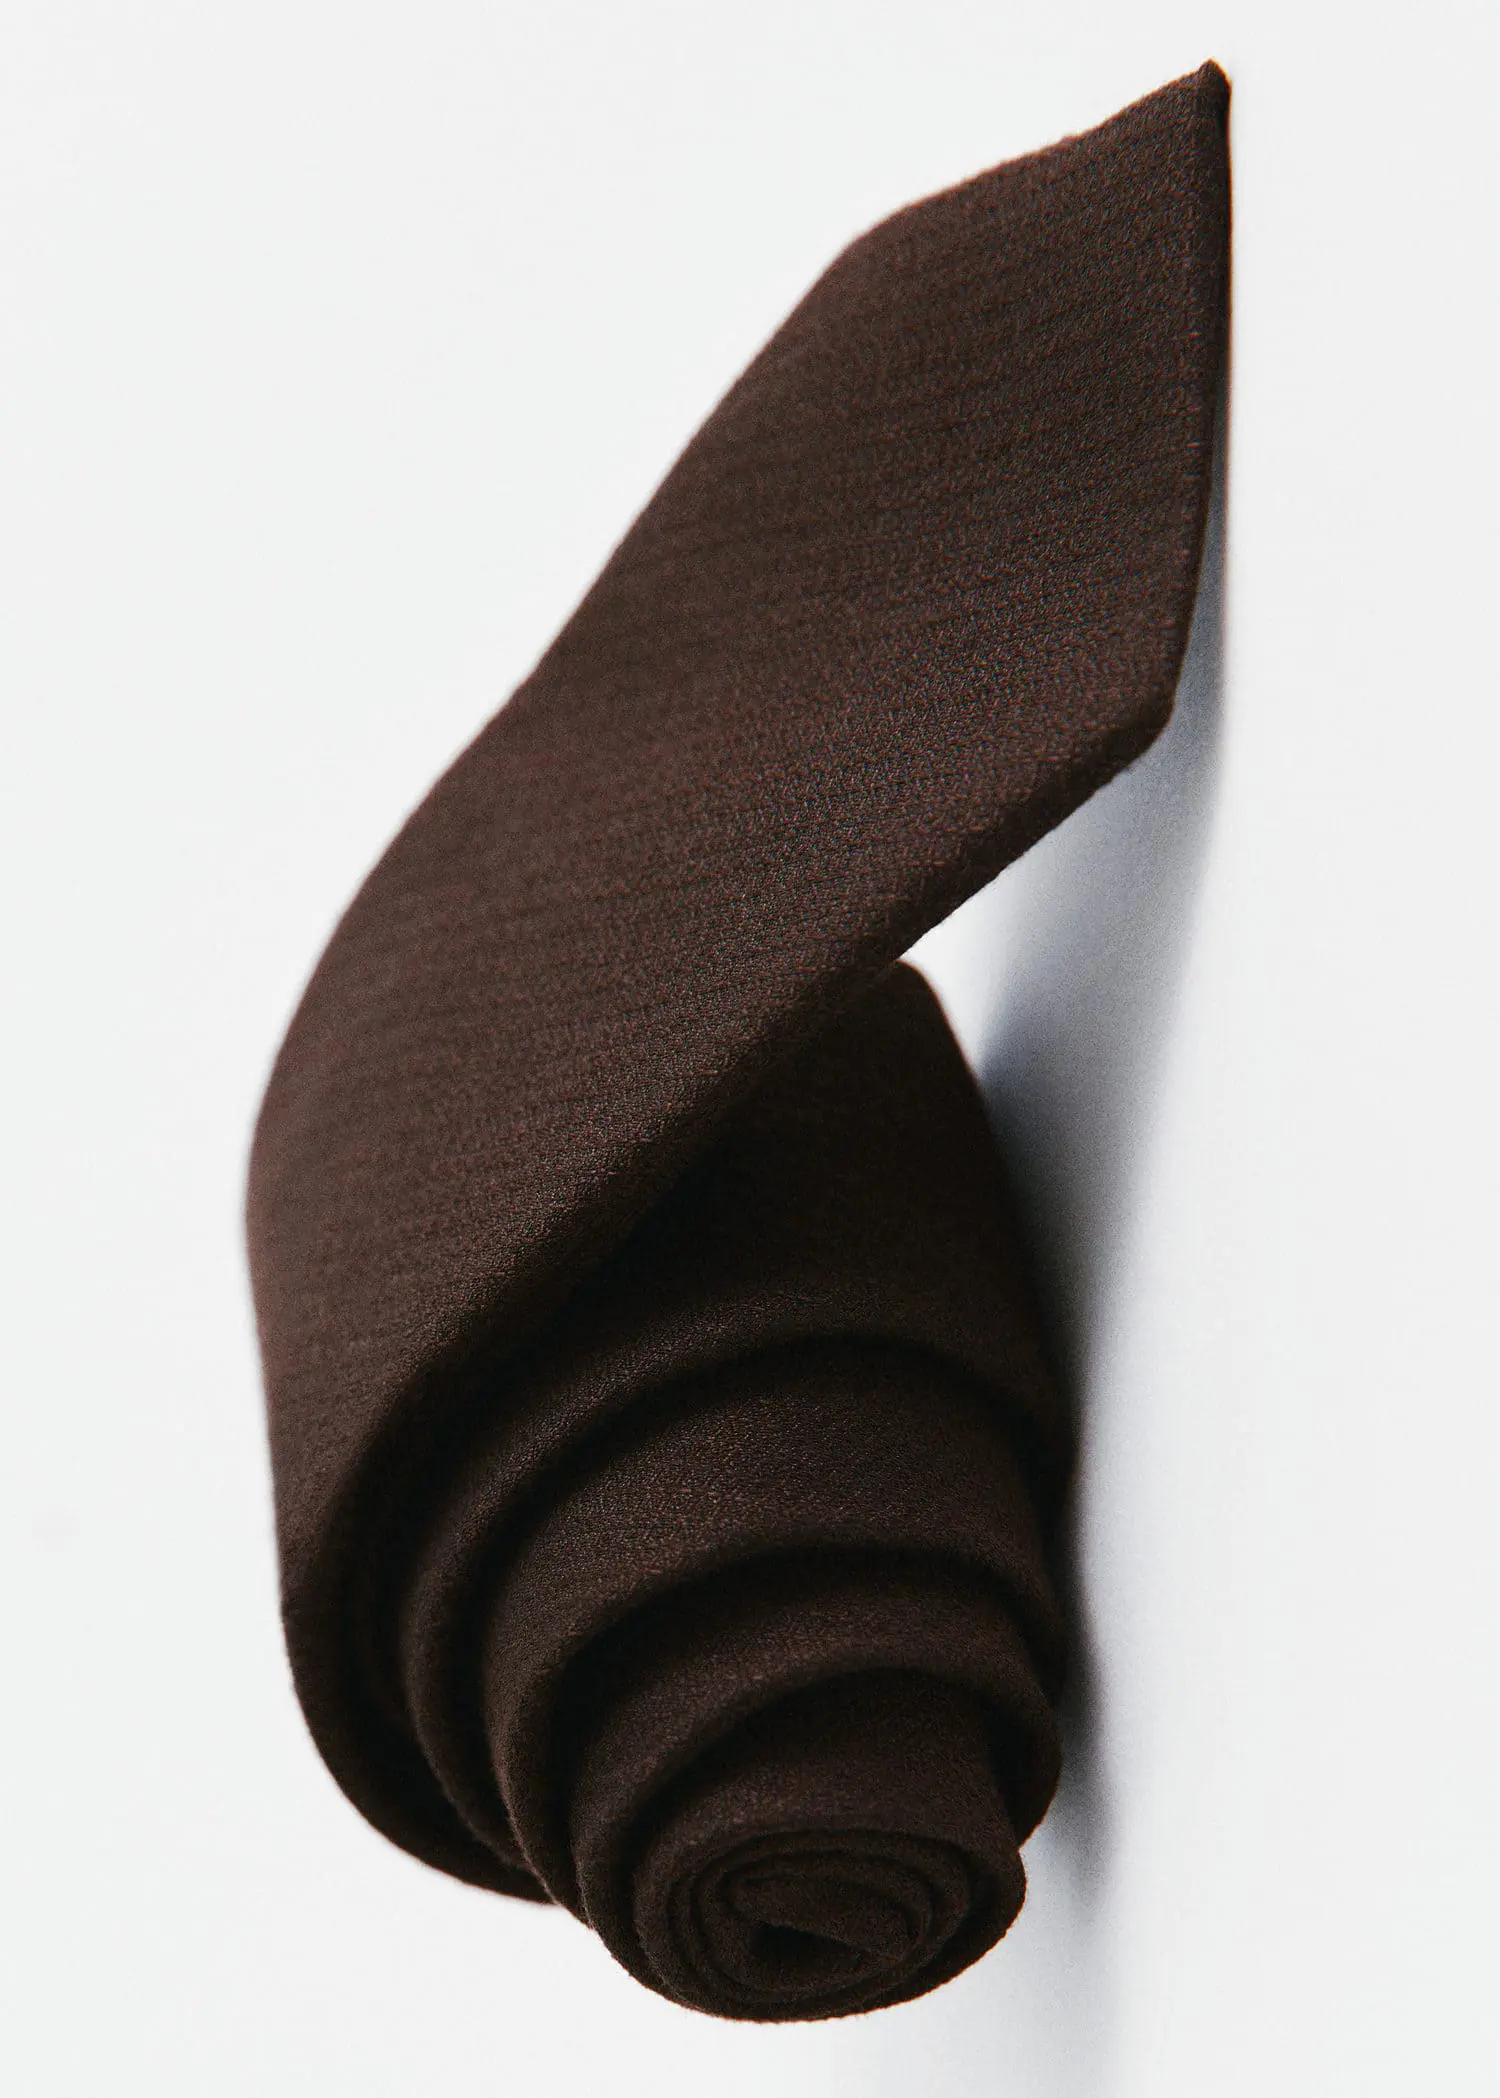 Mango Structured cotton tie. 3